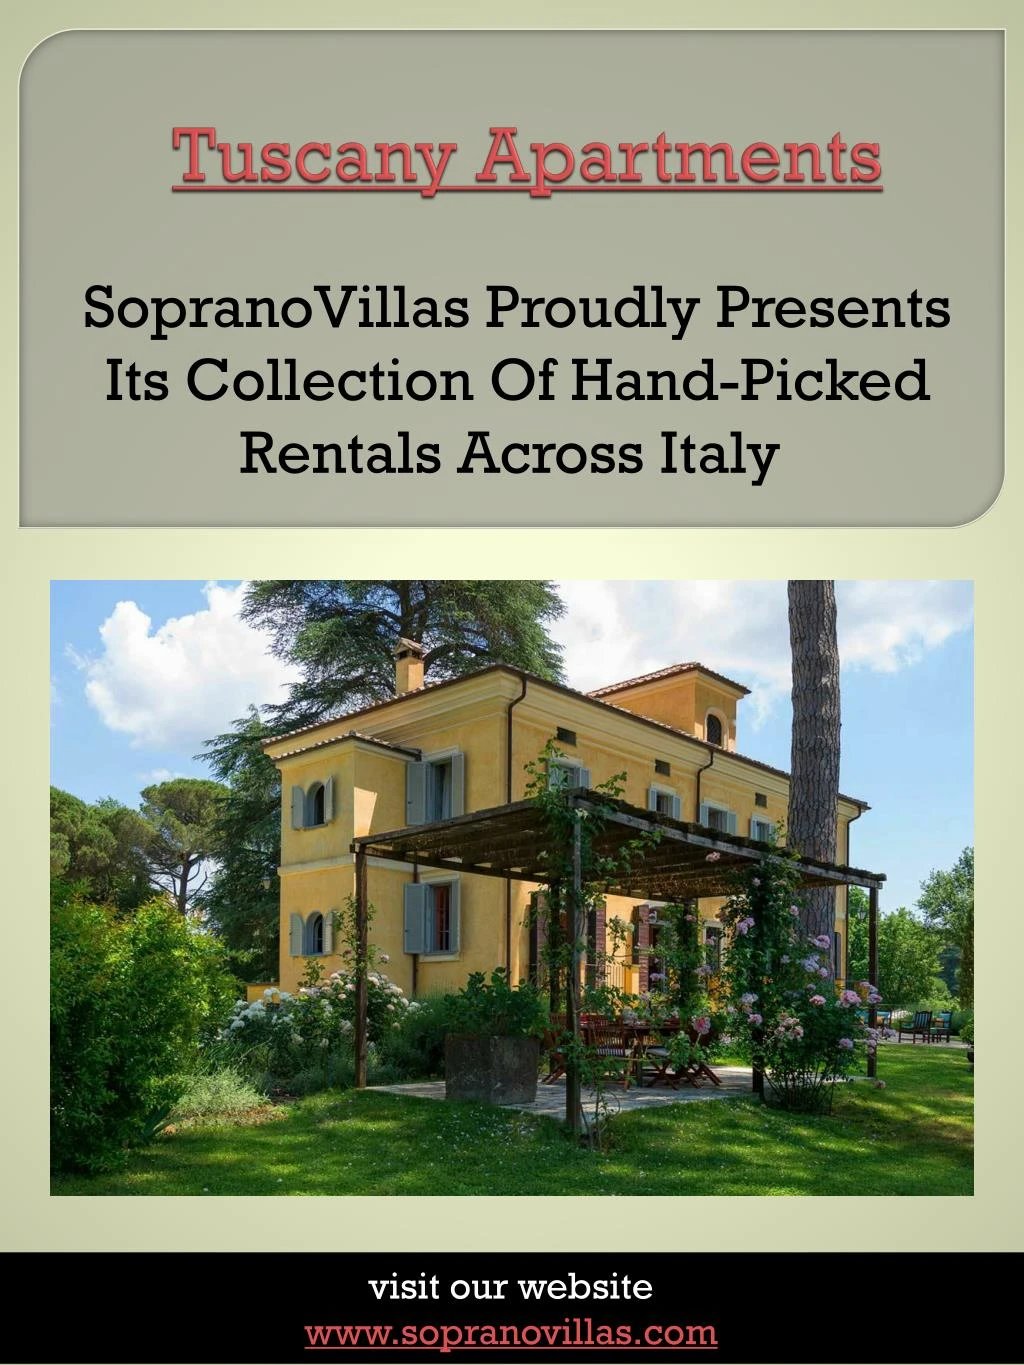 tuscany apartments